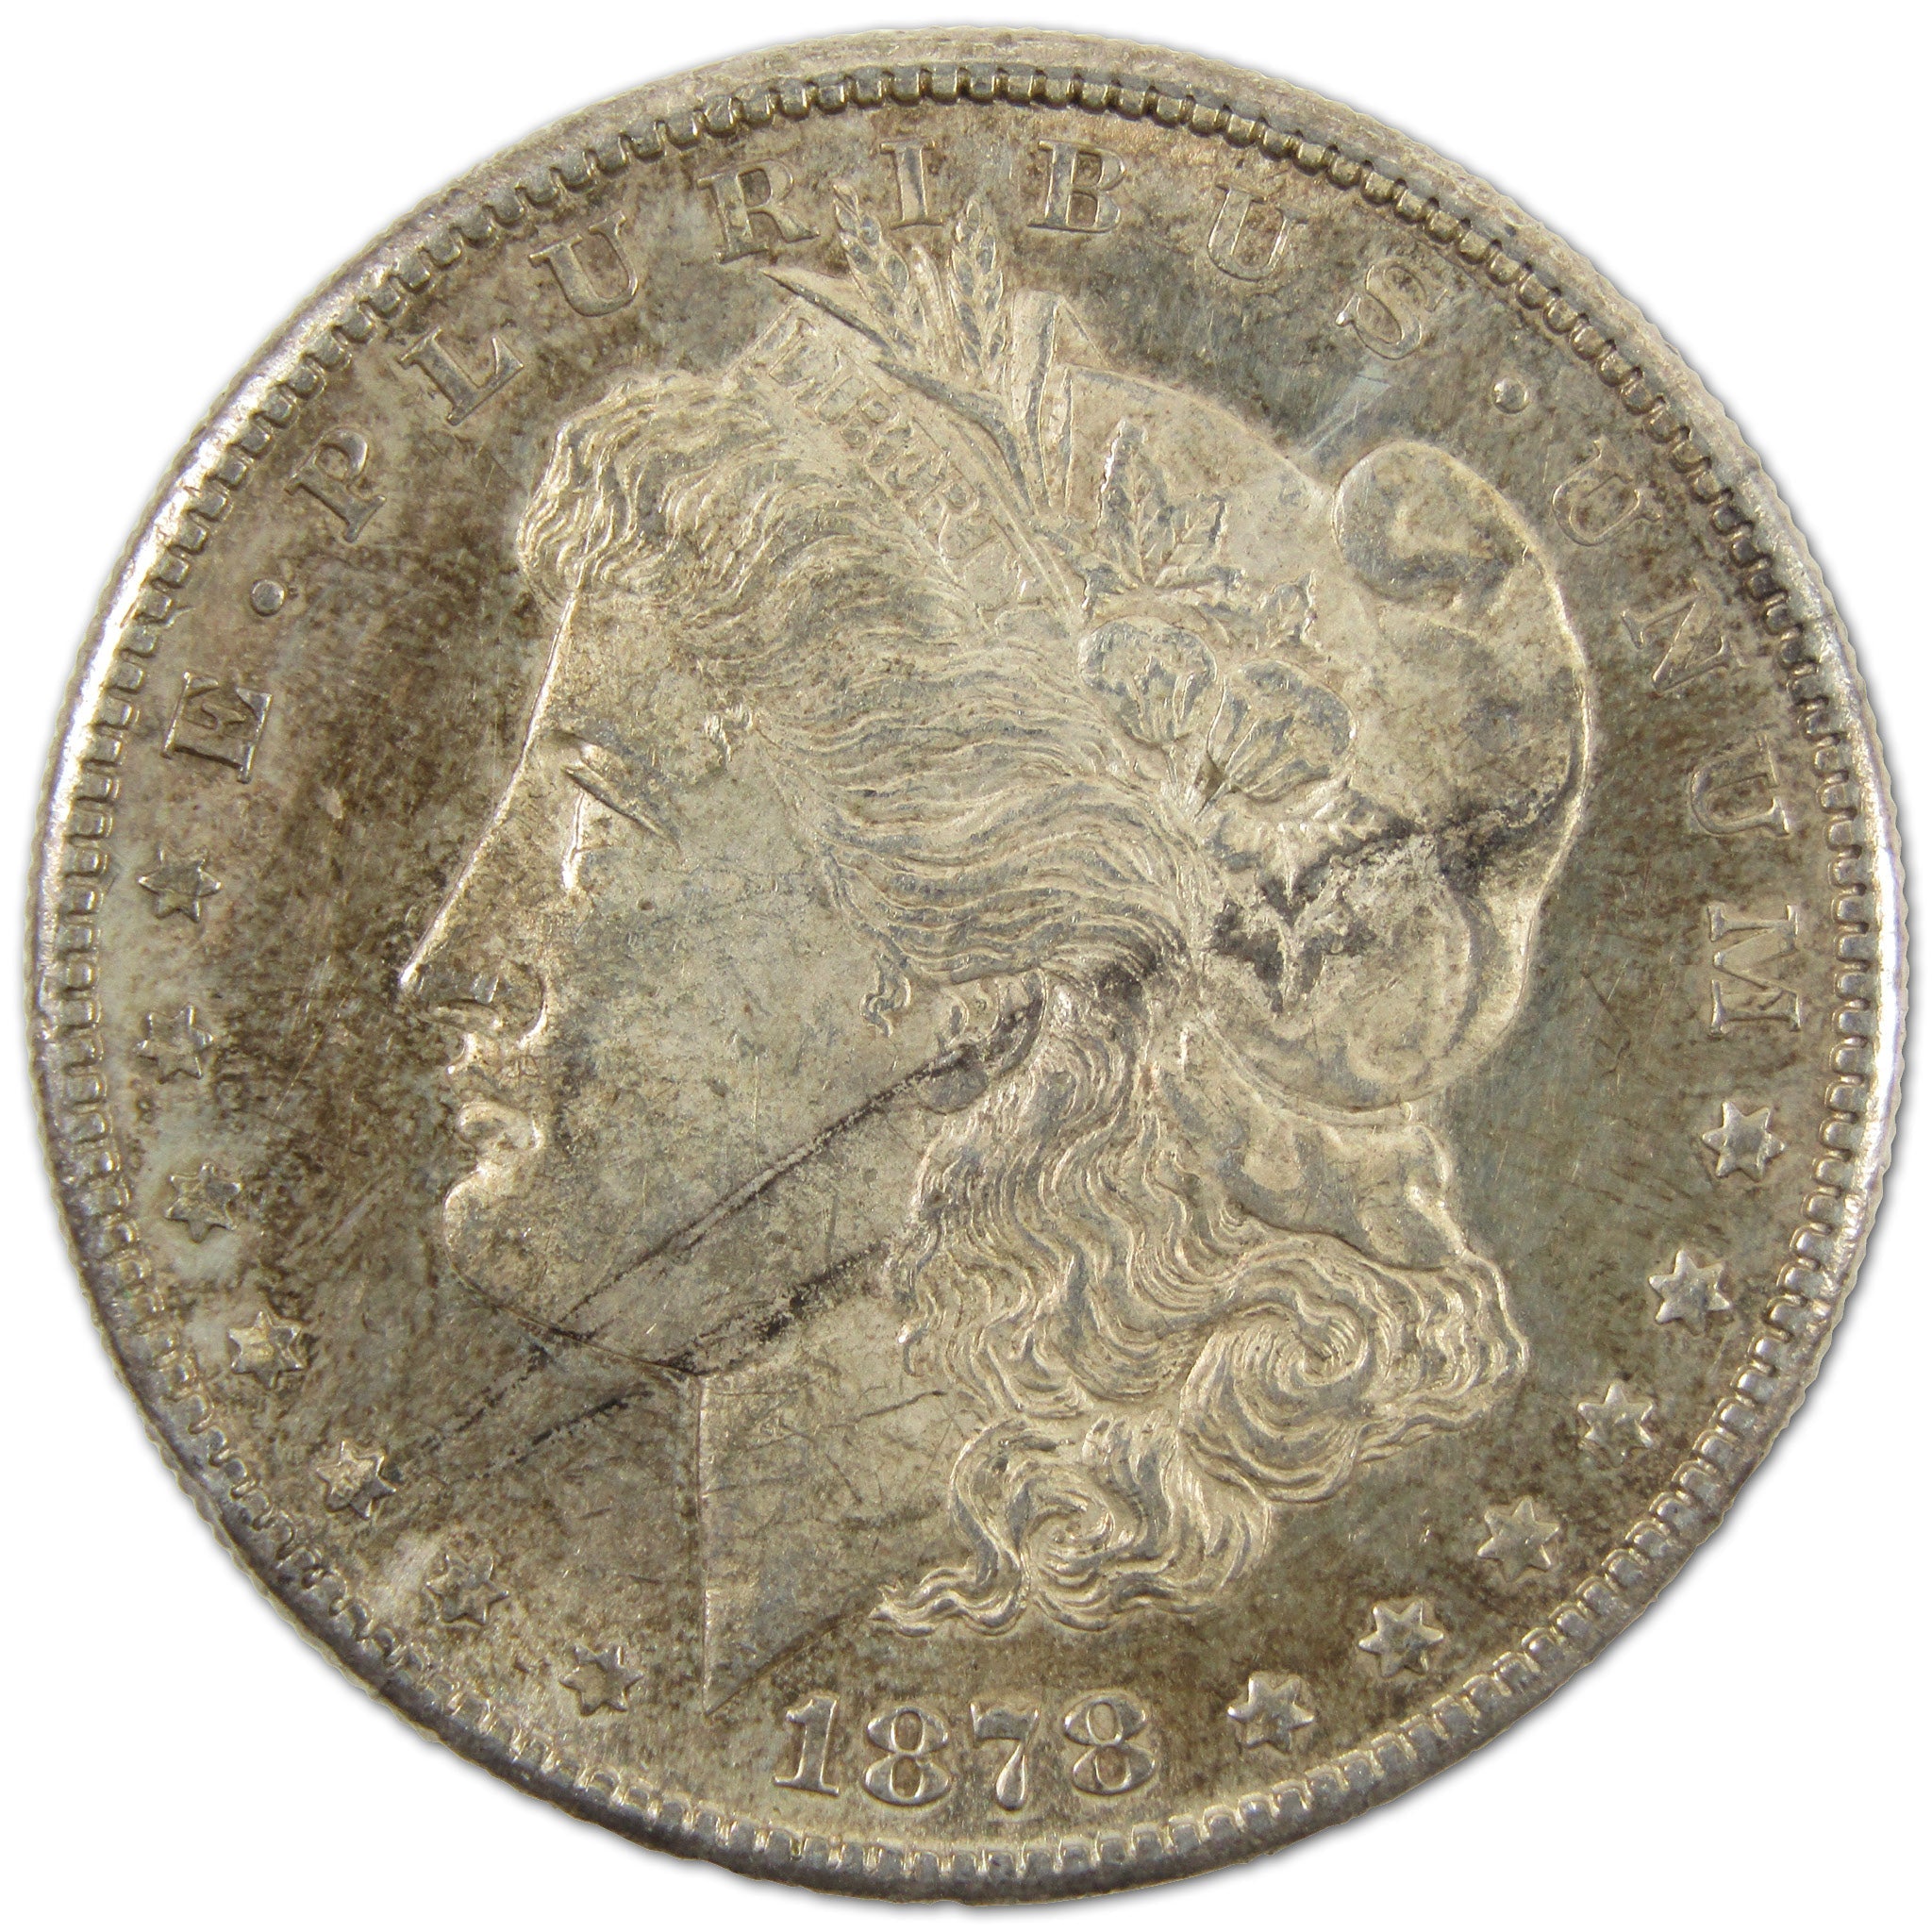 1878 S Morgan Dollar Borderline Uncirculated Silver $1 Coin SKU:I10896 - Morgan coin - Morgan silver dollar - Morgan silver dollar for sale - Profile Coins &amp; Collectibles